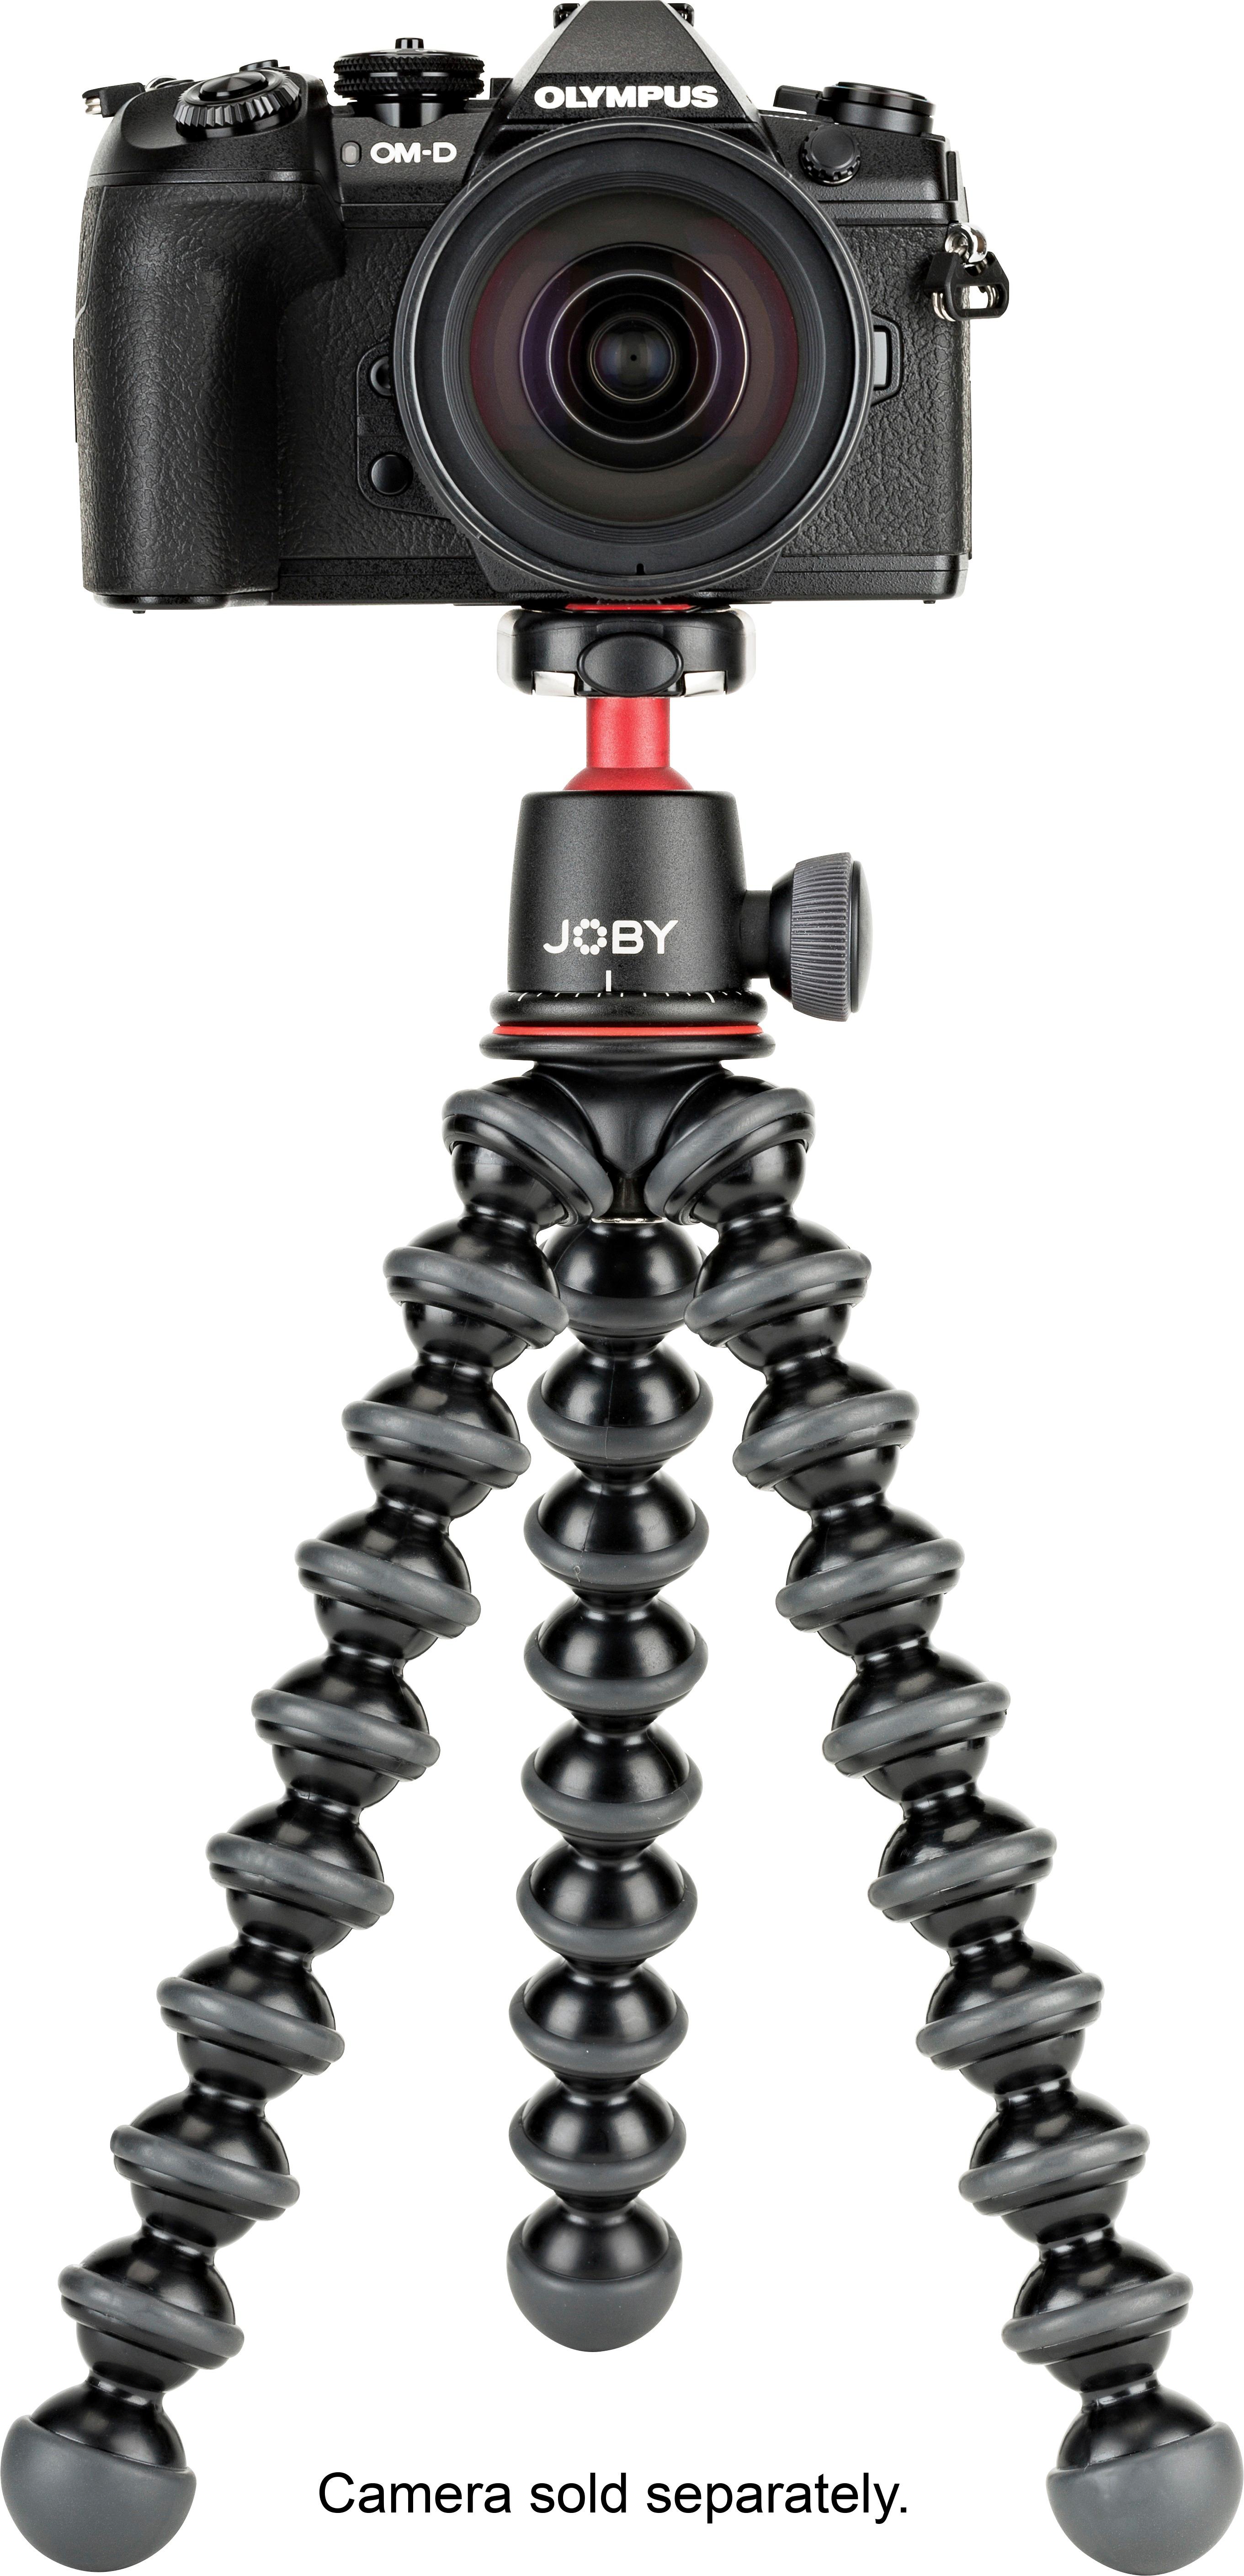 Joby GorillaPod 3K Kit